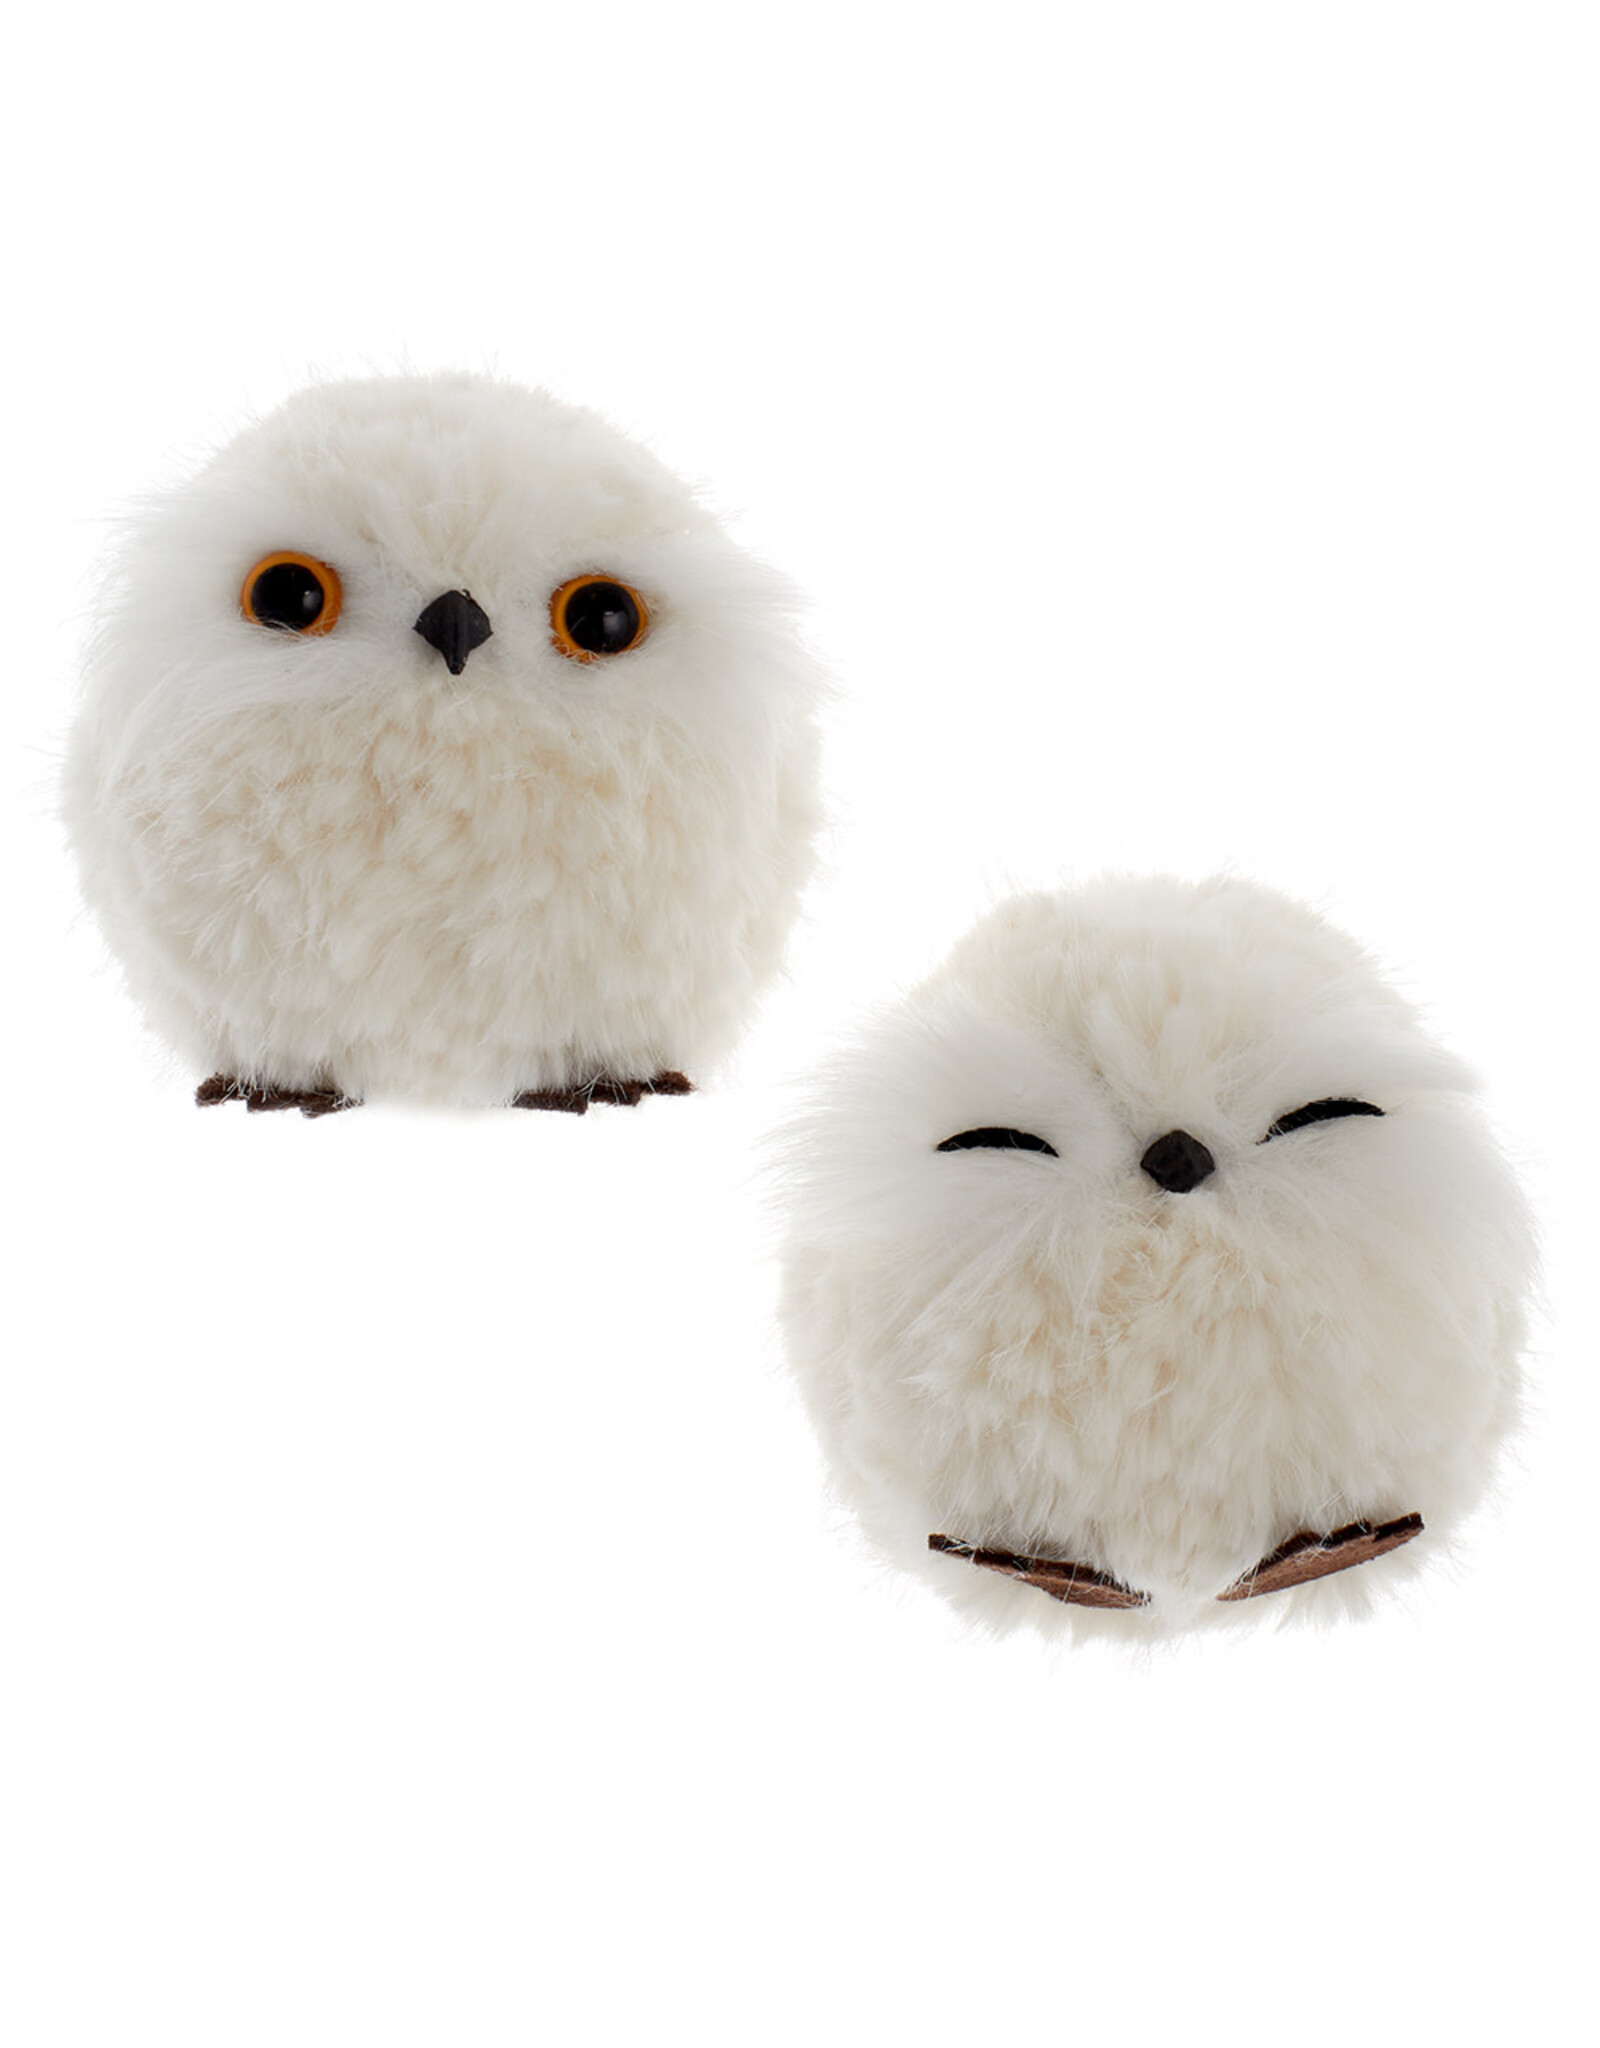 Kurt Adler White Fluffy Owl Ornaments Set of 2 Assorted